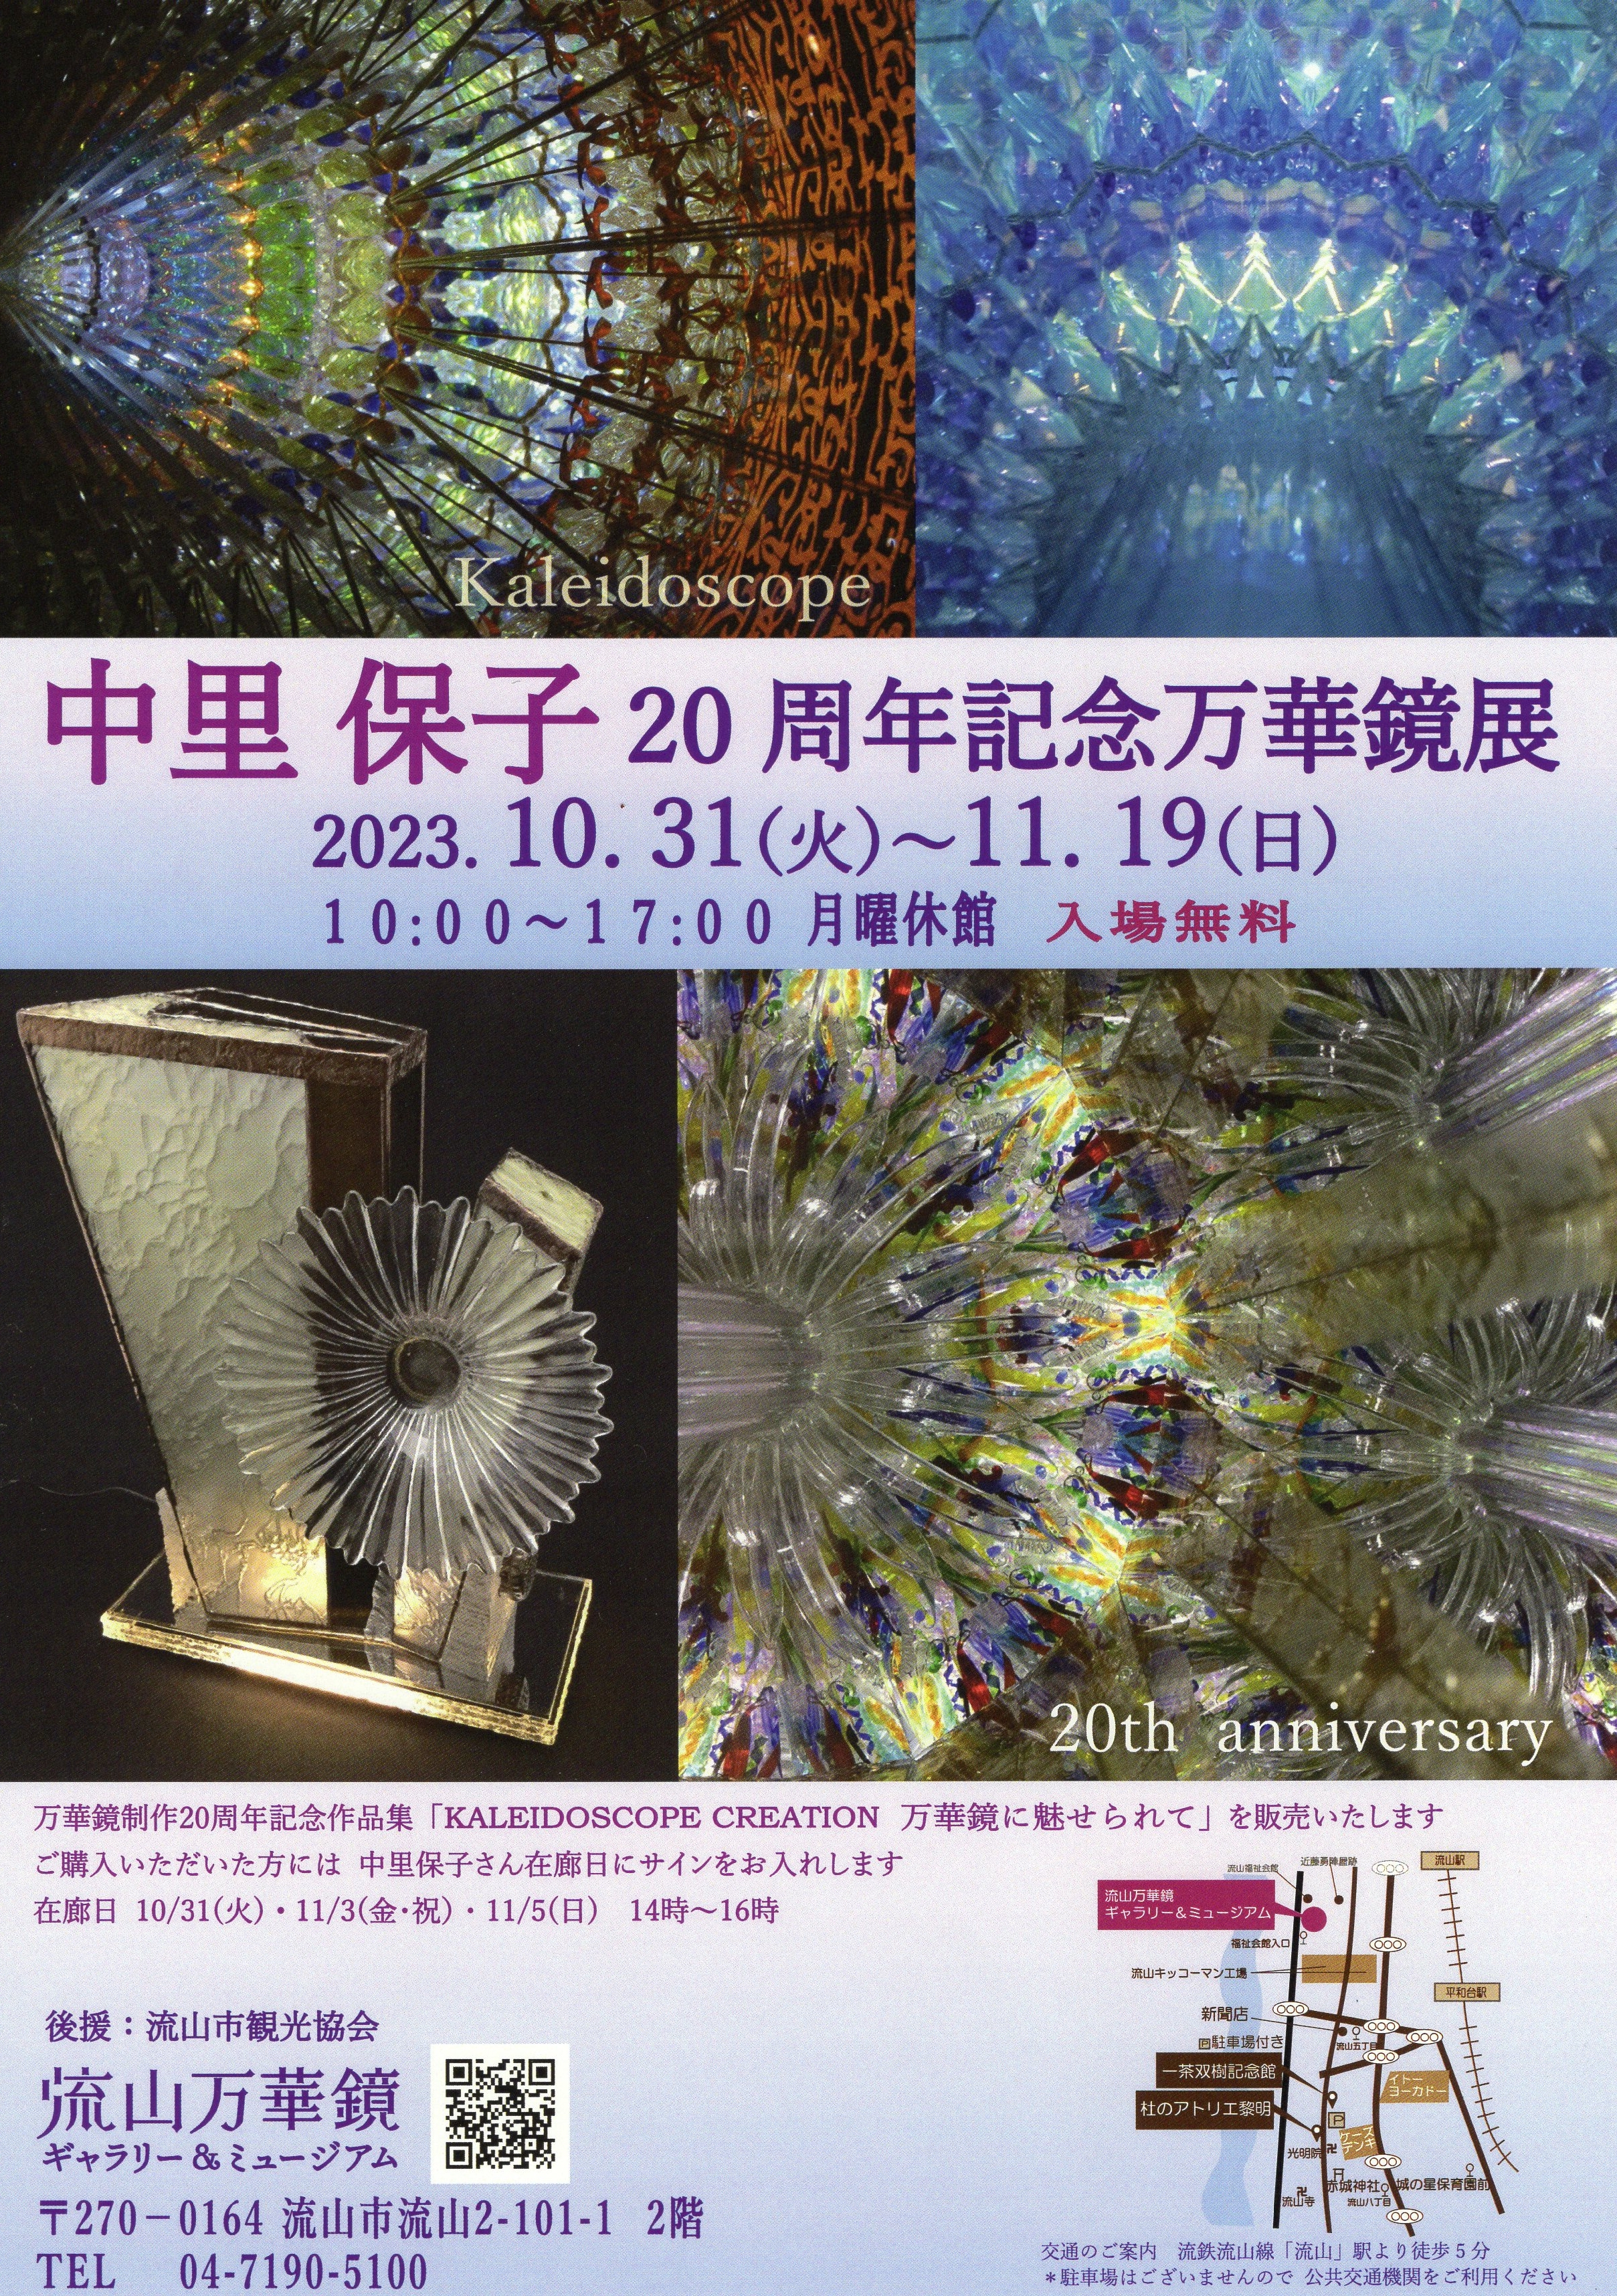 中里保子20周年記念万華鏡展が開催されます | Art Kaleidoscope Japan